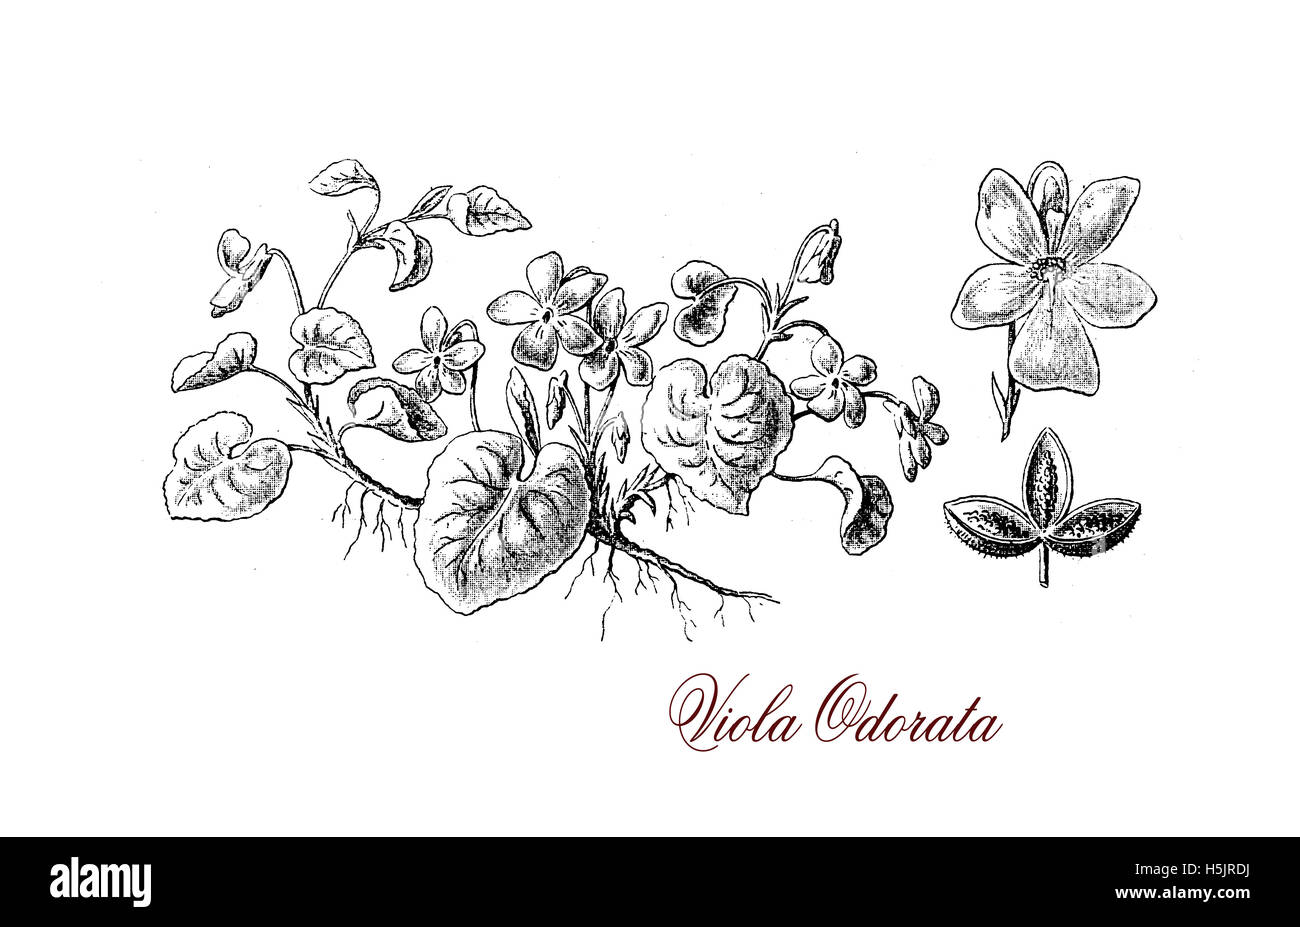 Garten violett oder Viola Odorata ist eine mehrjährige blühende Pflanze, die Blüten haben einen süßen Duft in der viktorianischen Ära populär und Blätter werden noch in der Parfümerie verwendet Stockfoto